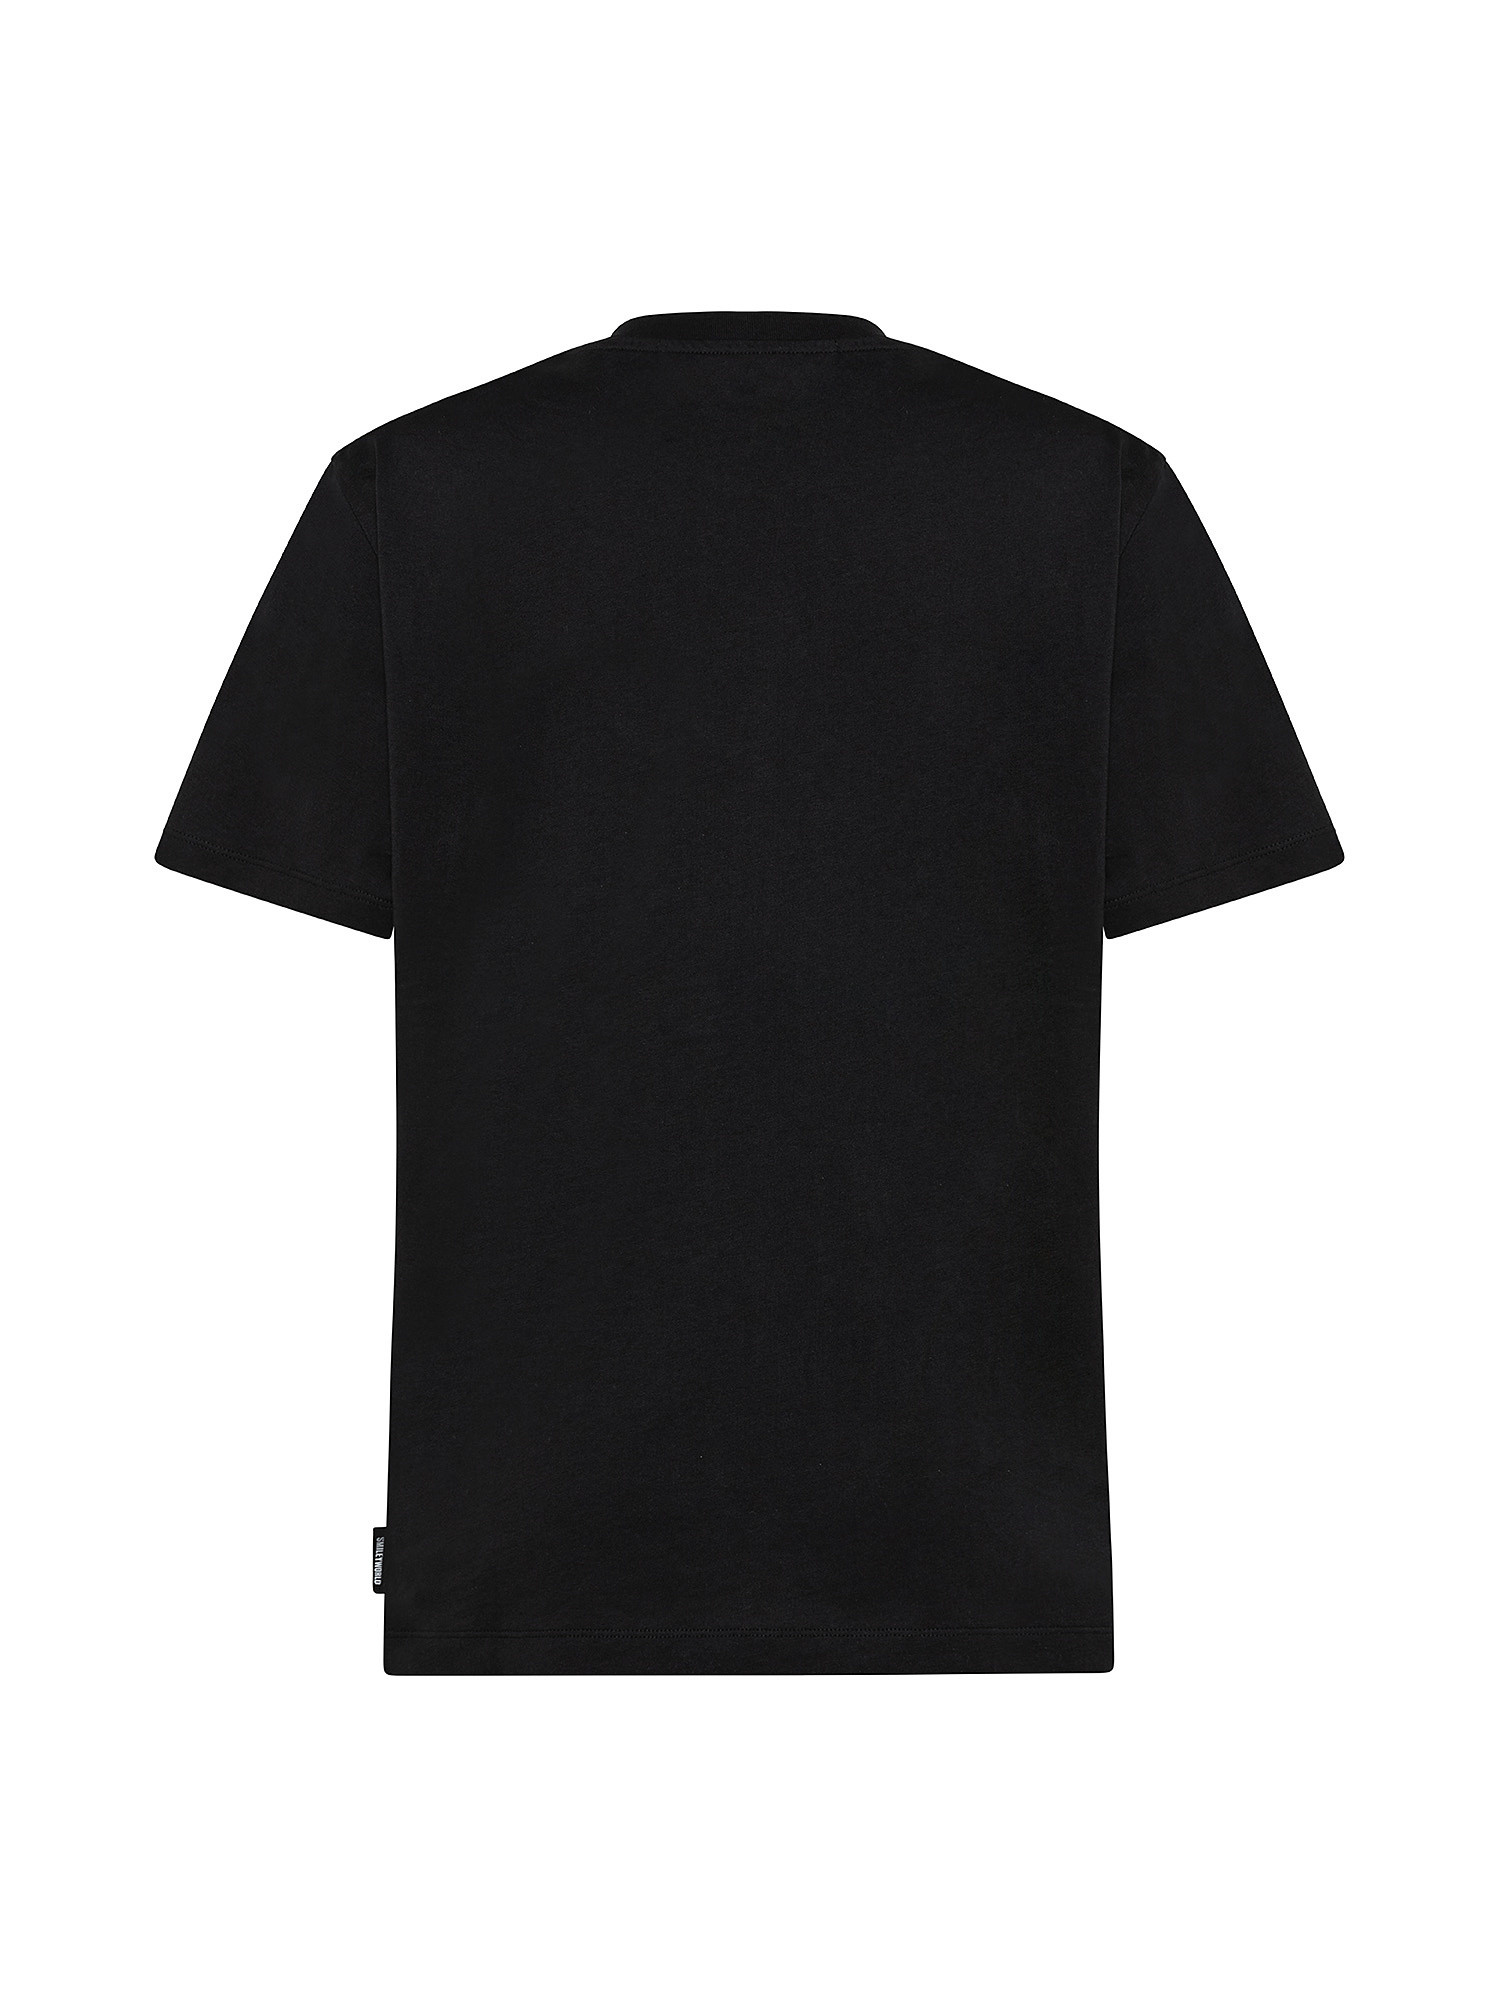 T-shirt unisex con logo mini emoticon, Nero, large image number 1